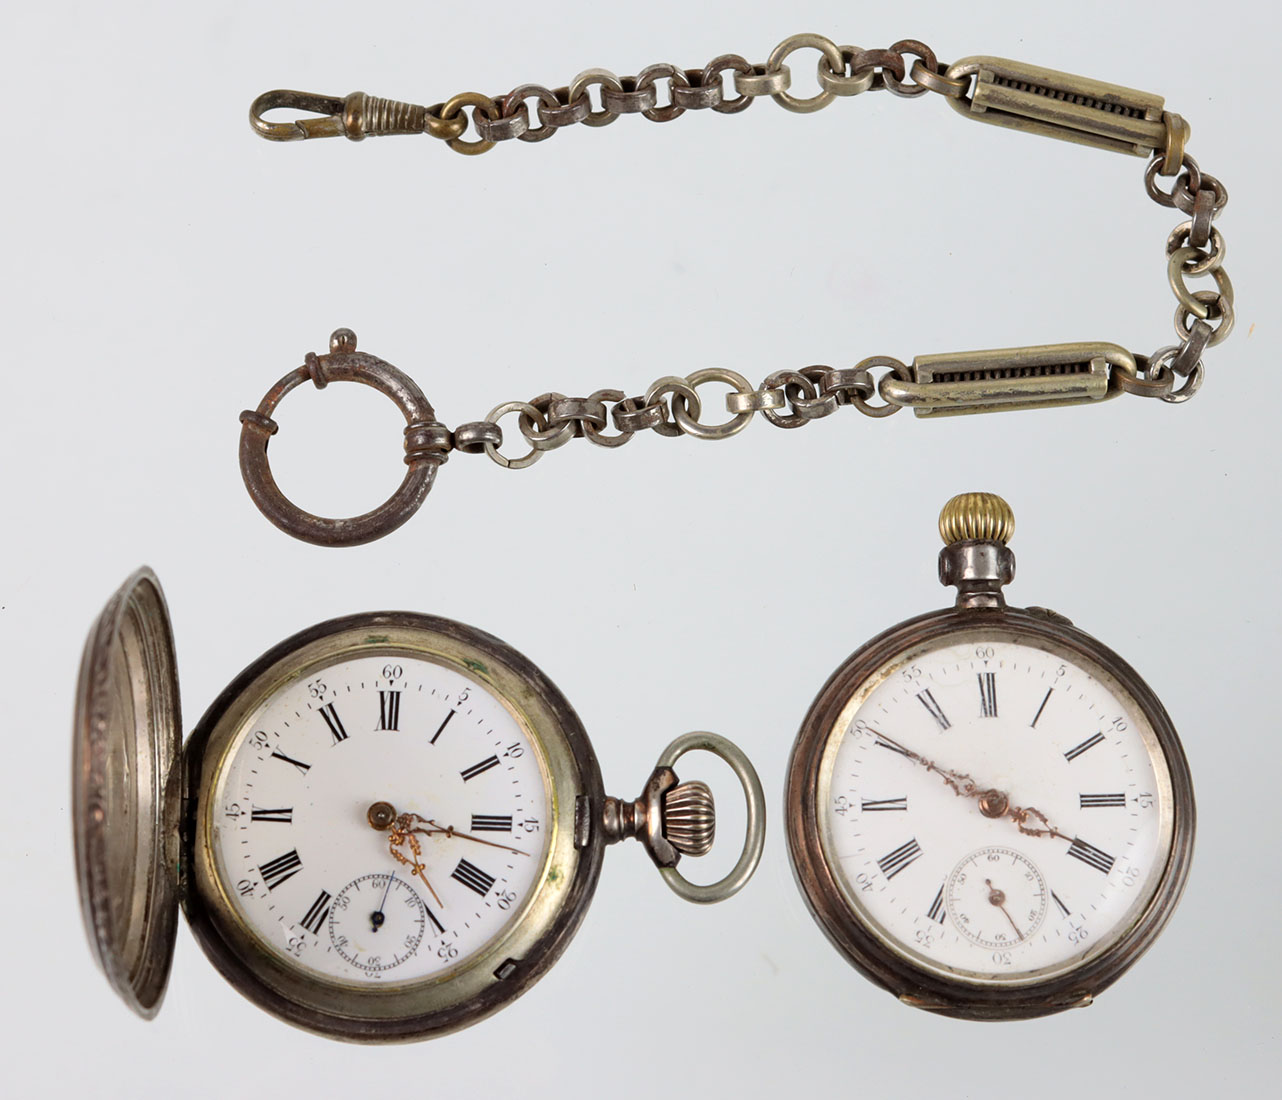 2 Herren Taschenuhren um 1900 reich mit Floralgravur verzierters Uhrengehäuse in Silb